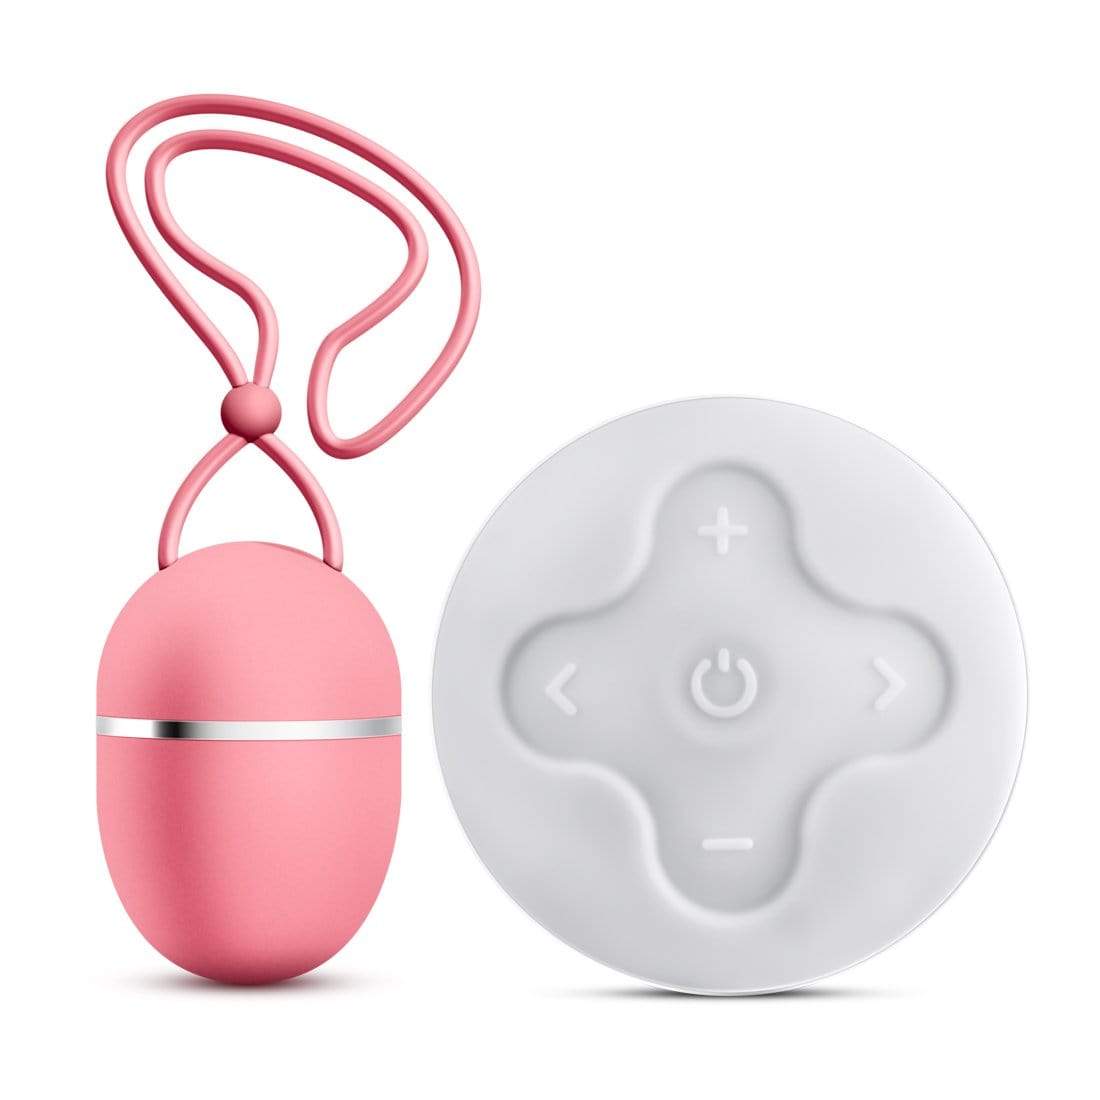 Blush Novelties   exposed darcy mini wireless vibrating egg dusty rose